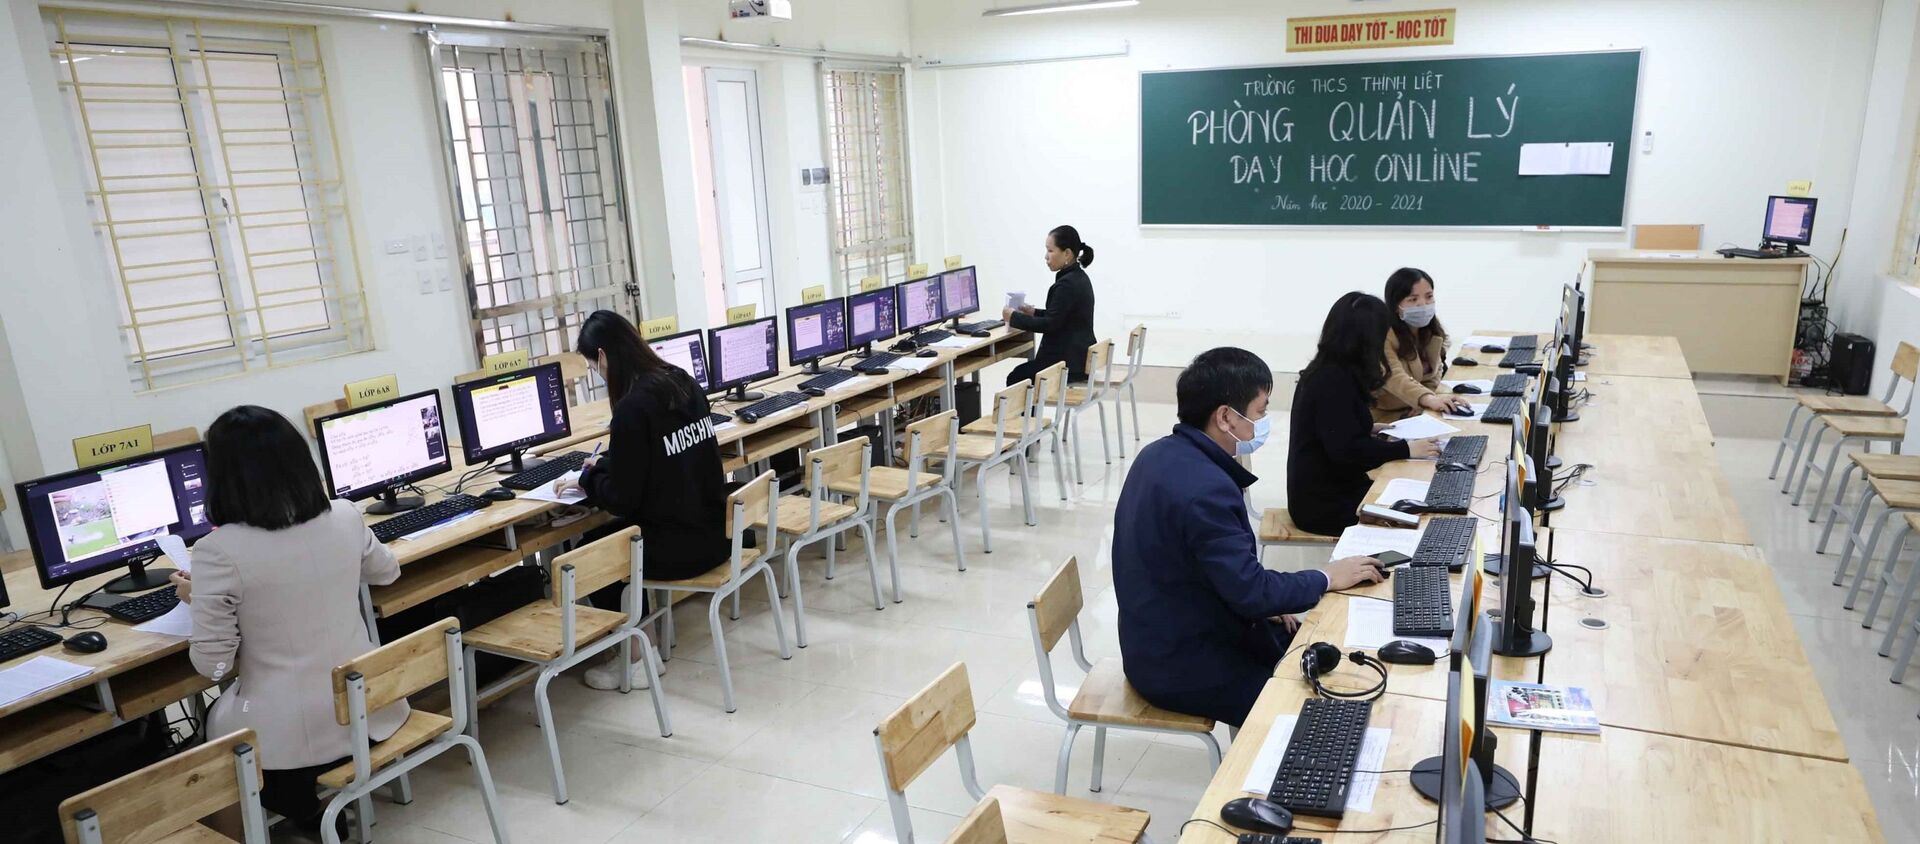 Sáng 27/2, công tác giảng dạy trực tuyến của trường THCS Thịnh Liệt, quận Hoàng Mai vẫn diễn ra hiệu quả theo đúng thời khóa biểu - Sputnik Việt Nam, 1920, 27.02.2021